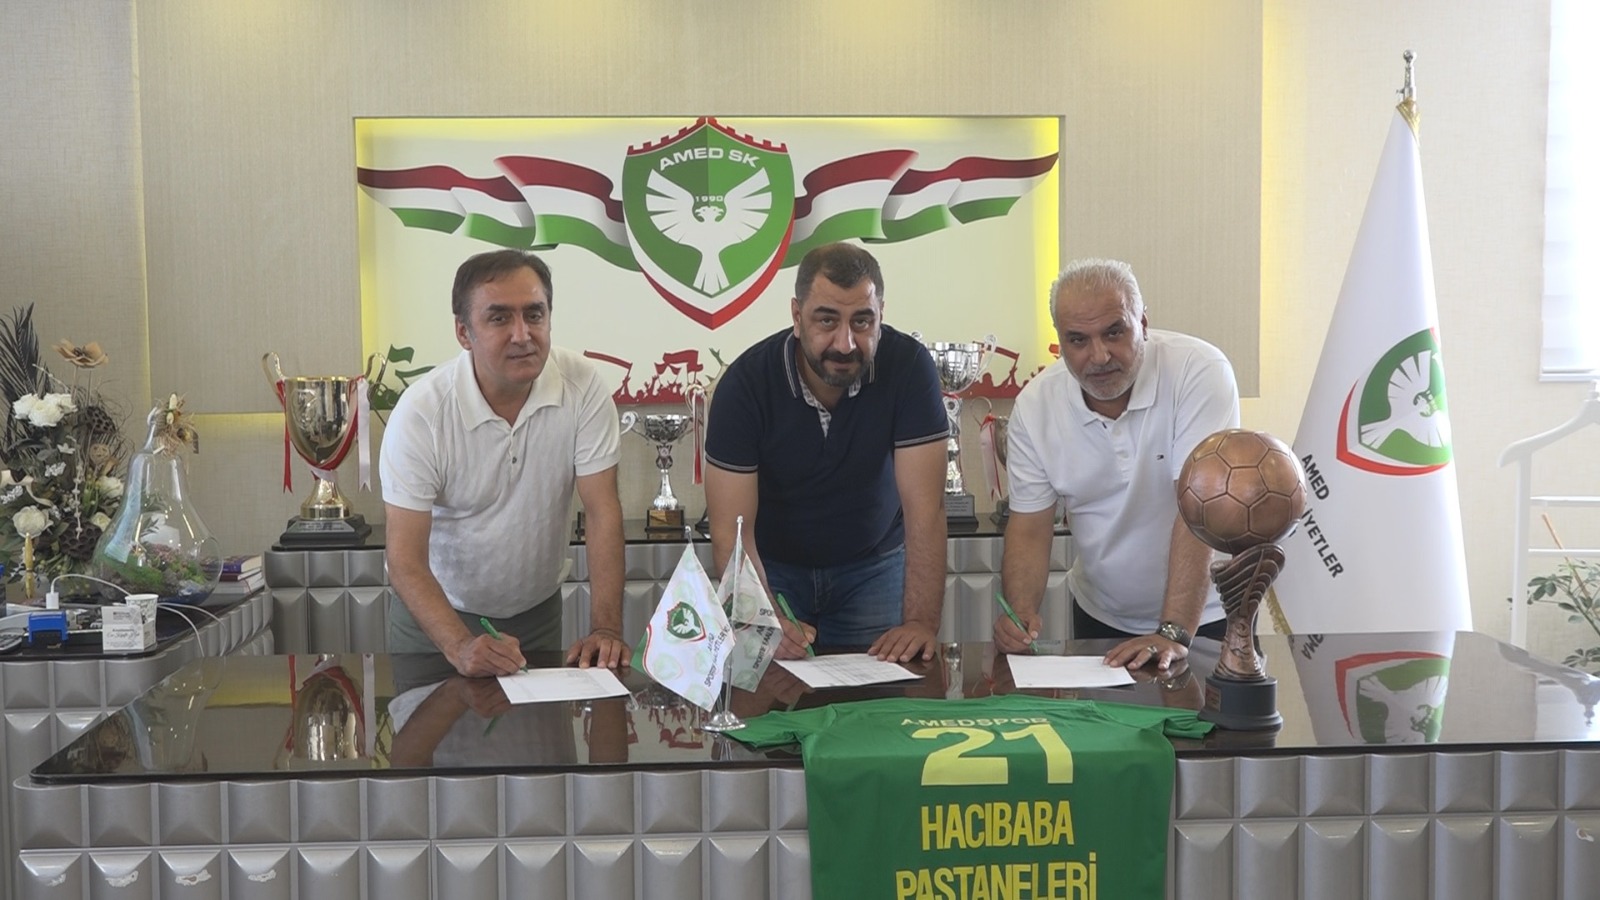 VİDEO - Hacı Baba, Amedspor’a sponsor oldu